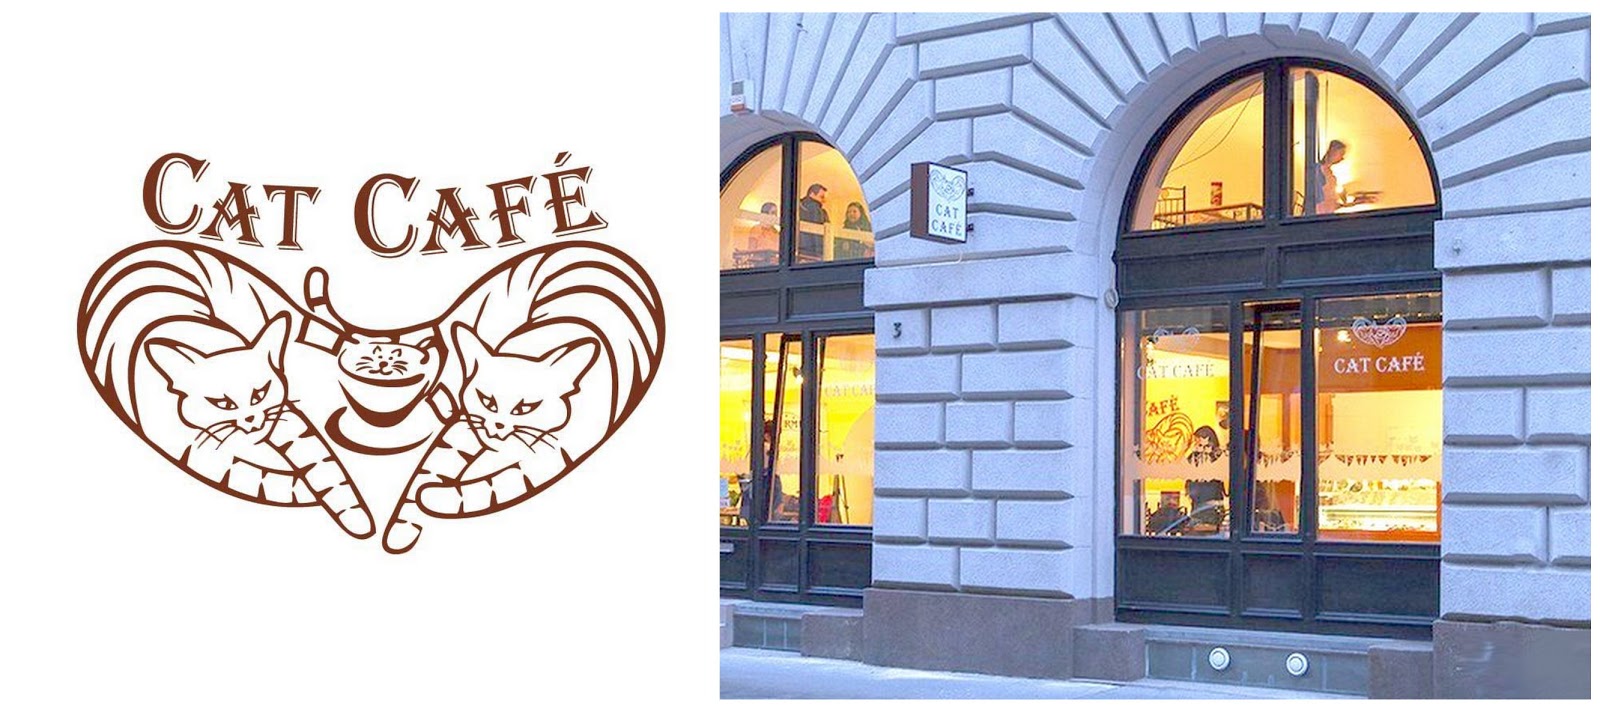 Sünis kanál: Cat Café Budapest – egy cicás nap a fővárosban